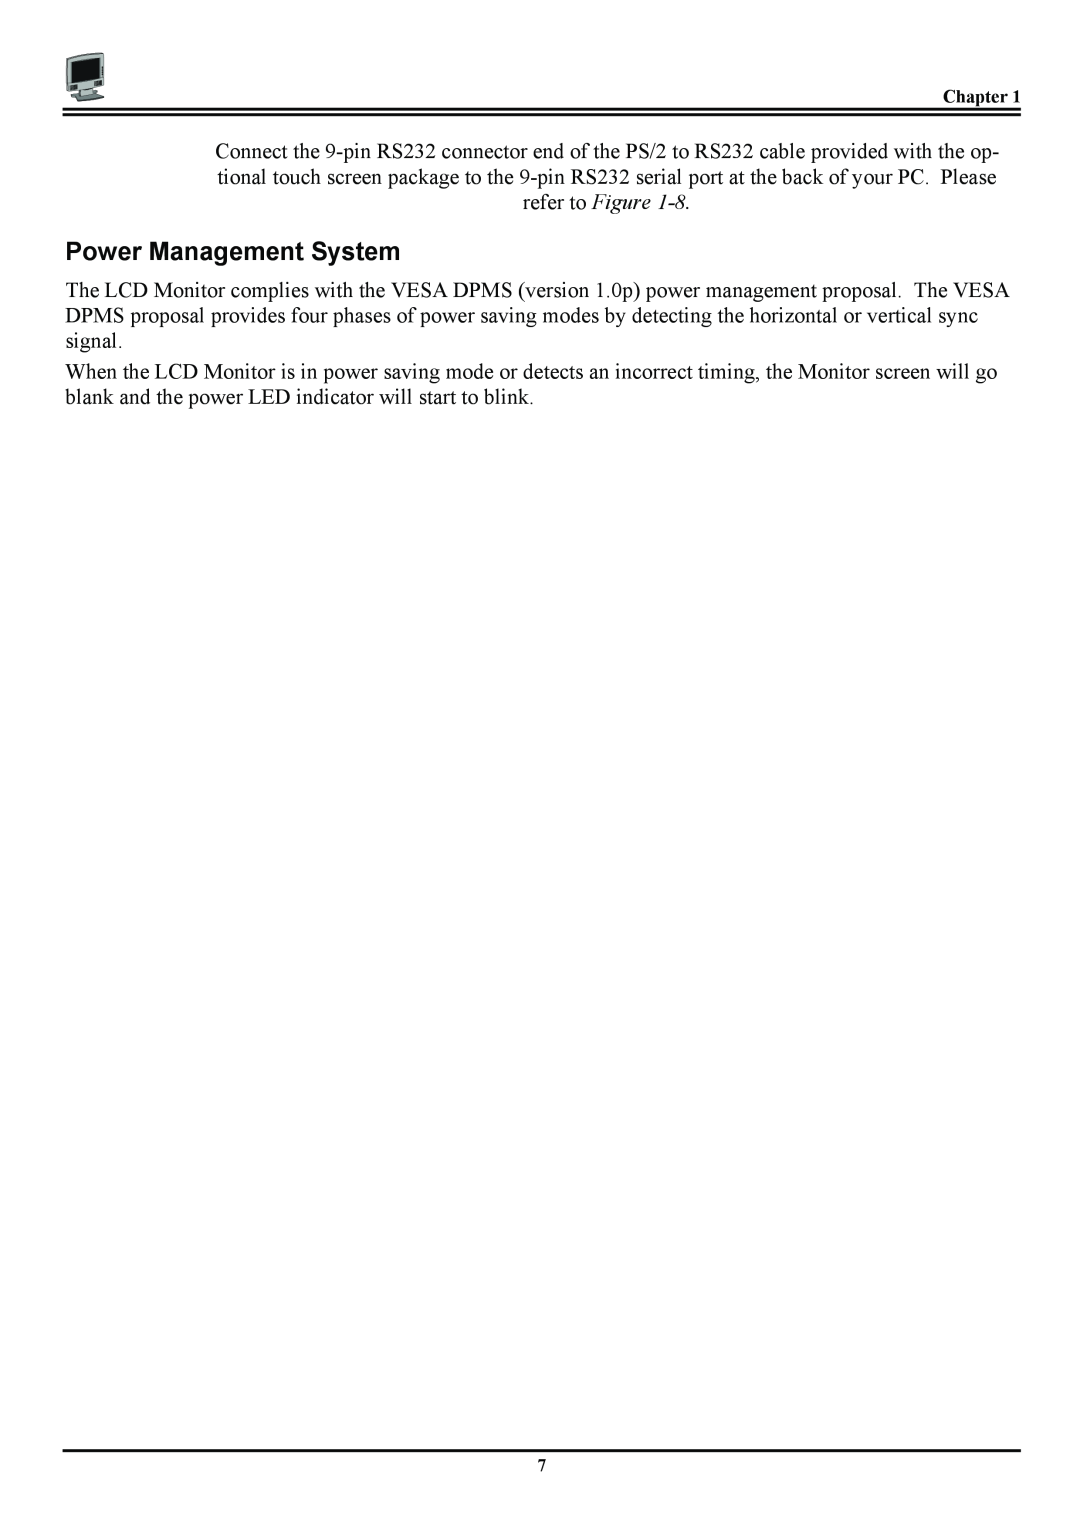 Planar PT120, PL120 manual Power Management System 